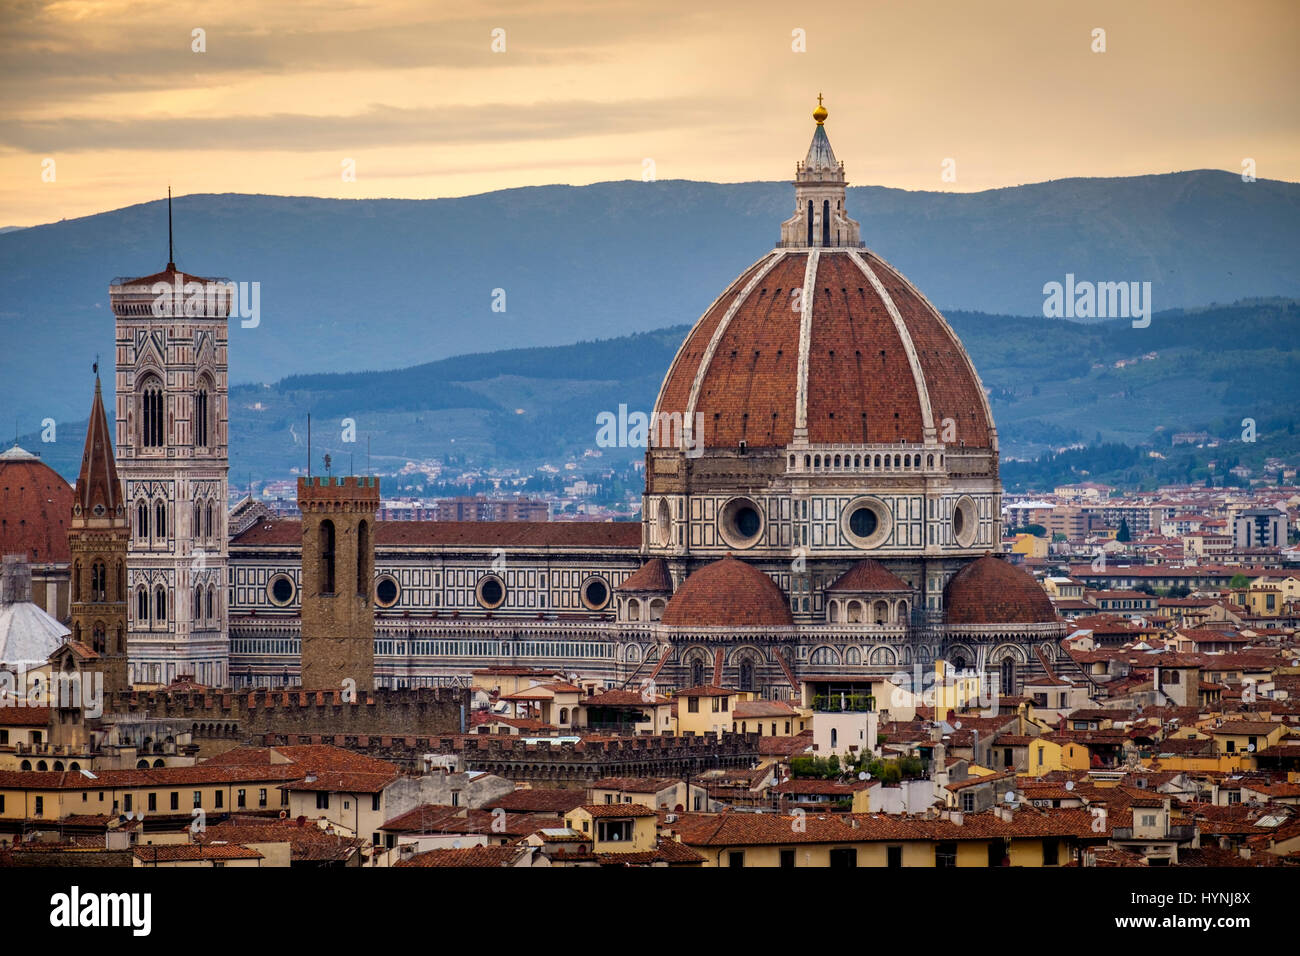 Firenze, Italia - CIRCA NEL MAGGIO 2015: Firenze Duomo di Santa Maria del Fiore, conosciuta come il Duomo, al tramonto visto da Piazza Michelangelo Foto Stock